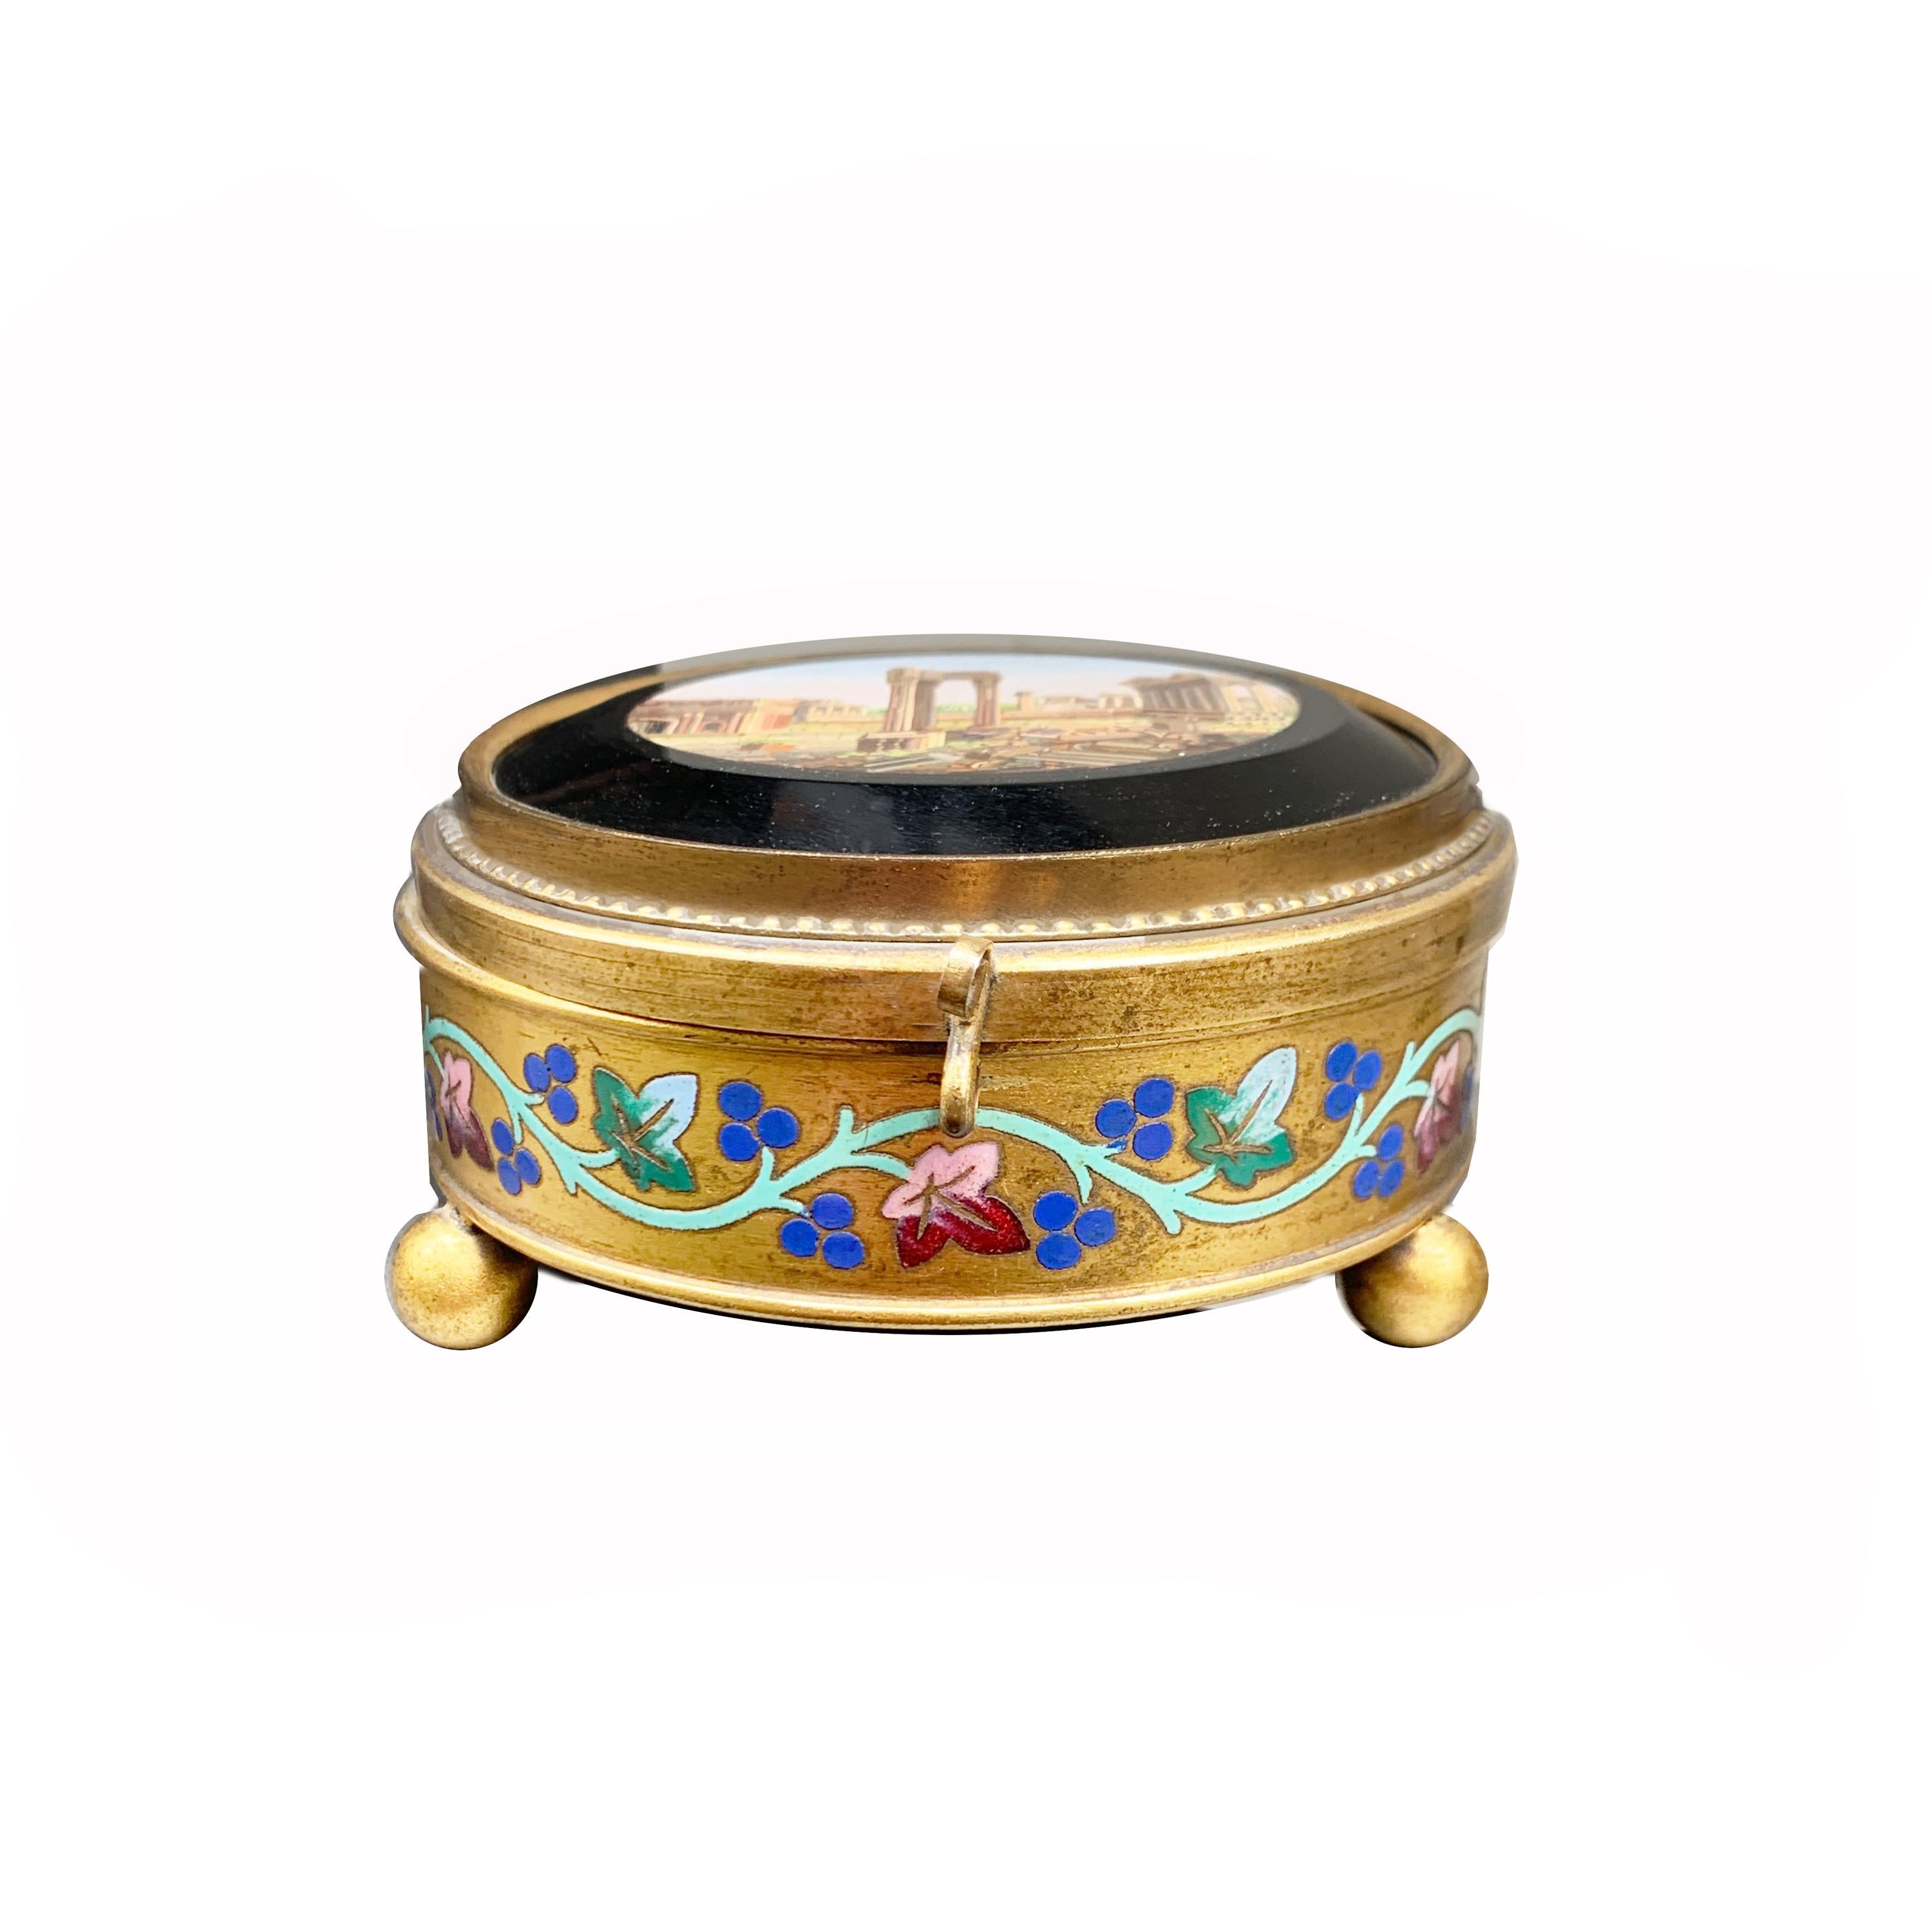 Dans cette boîte en bronze doré à 24 kt, ornée de motifs floraux peints à la main, se trouve une magnifique micromosaïque (vers 1850) représentant le Forum romain.
Le 